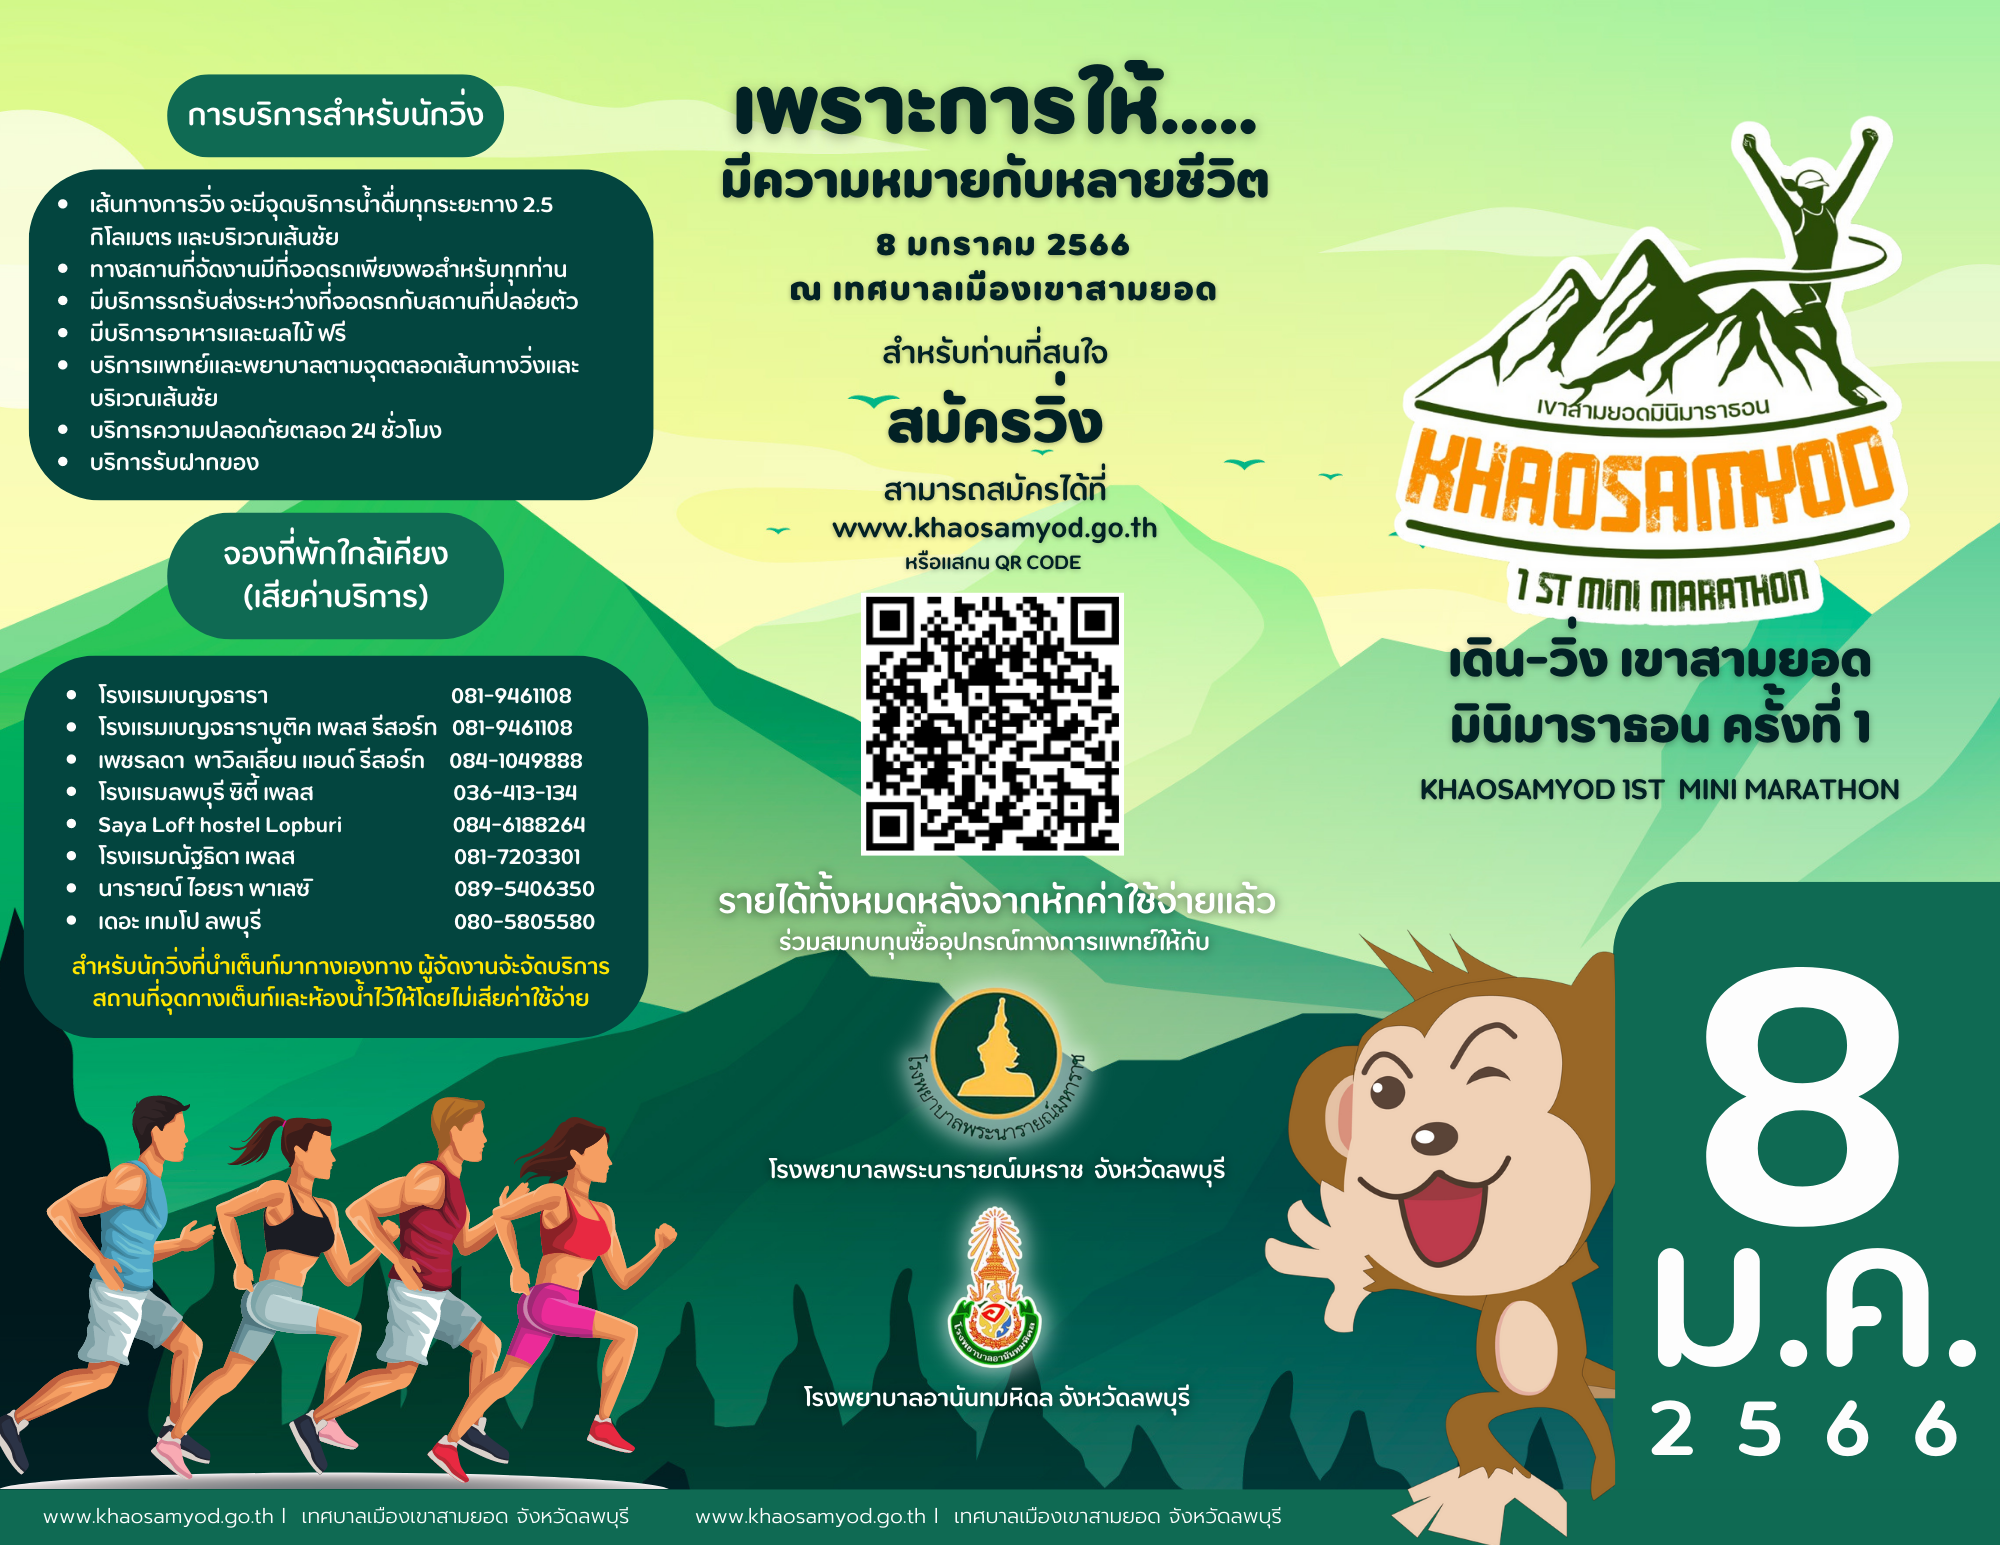 ใบสมัคร เข้าร่วมการแข่งขัน เดิน-วิ่ง "เขาสามยอด มินิมาราธอน 2022 ครั้งที่ 1" Khaosamyod 1st mini Marathon 2022